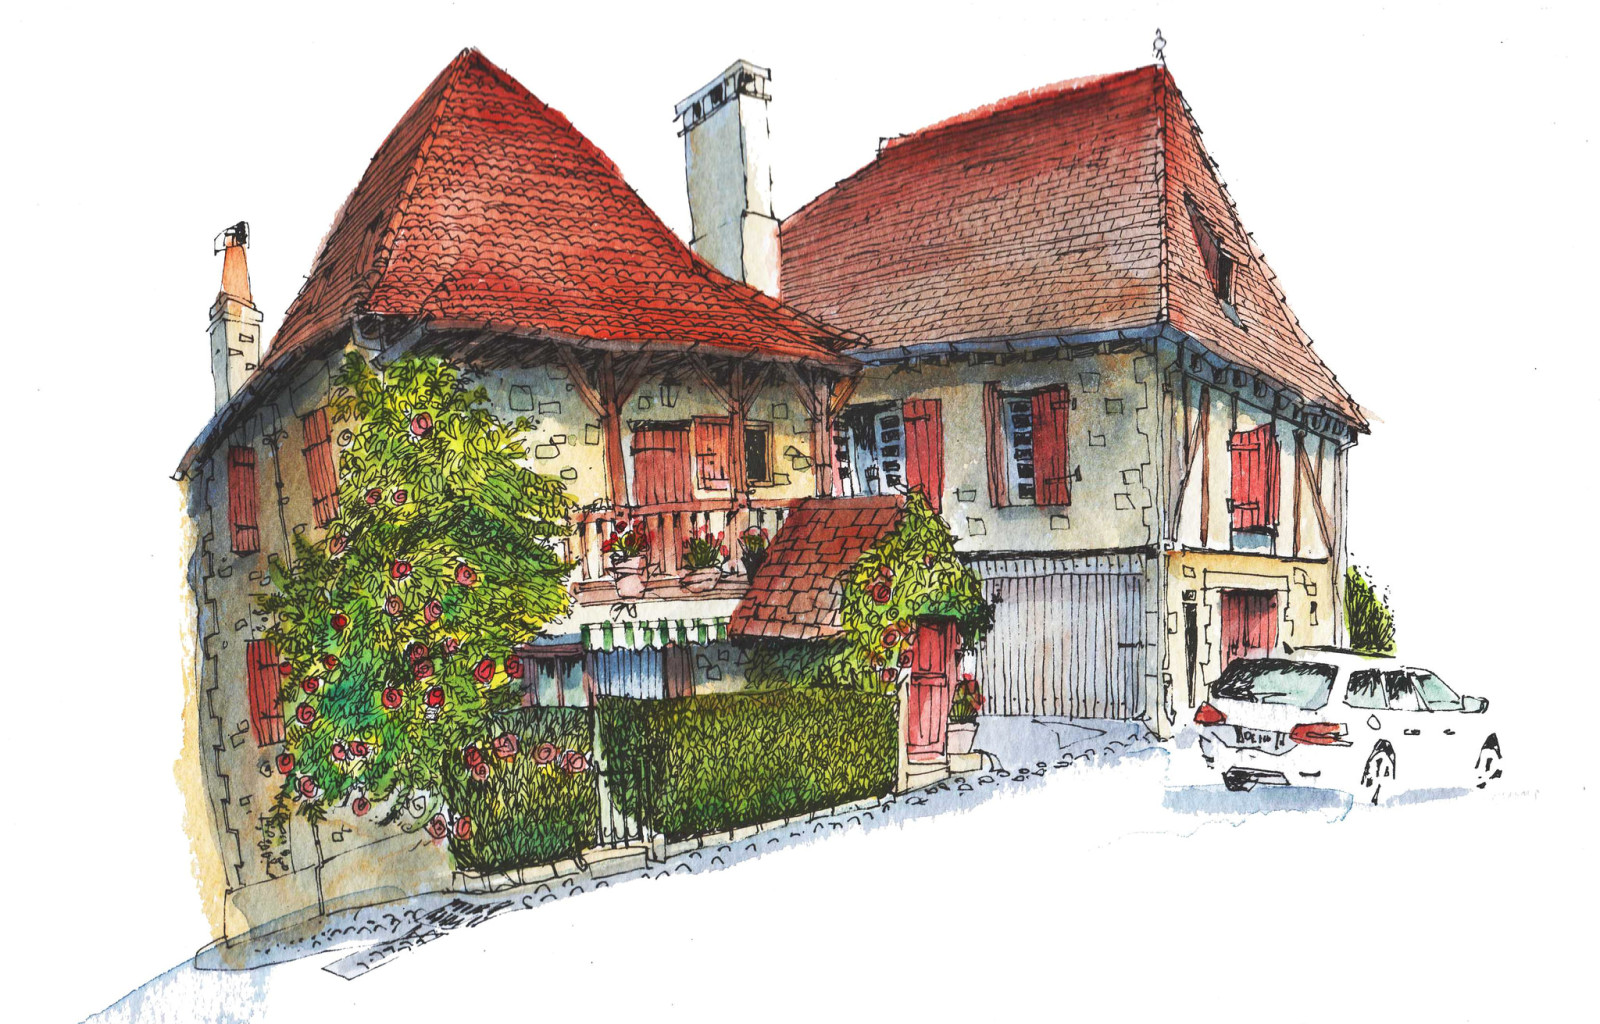 เมือง, บ้าน, รถยนต์, ฝรั่งเศส, รูป, สี, Gagnac-sur-Cere